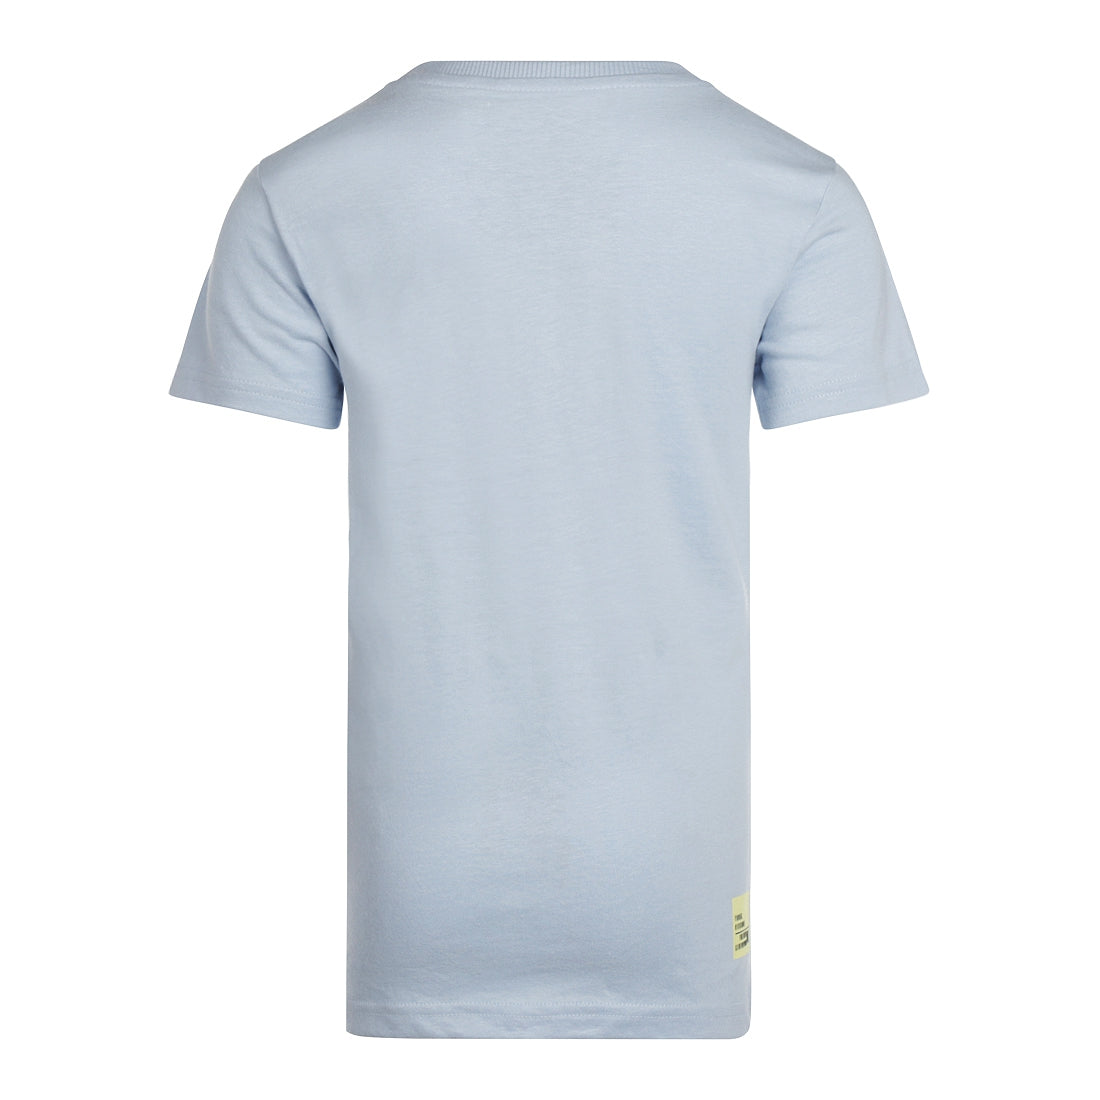 Jongens T-shirt ss van No Way Monday in de kleur Light blue in maat 164.